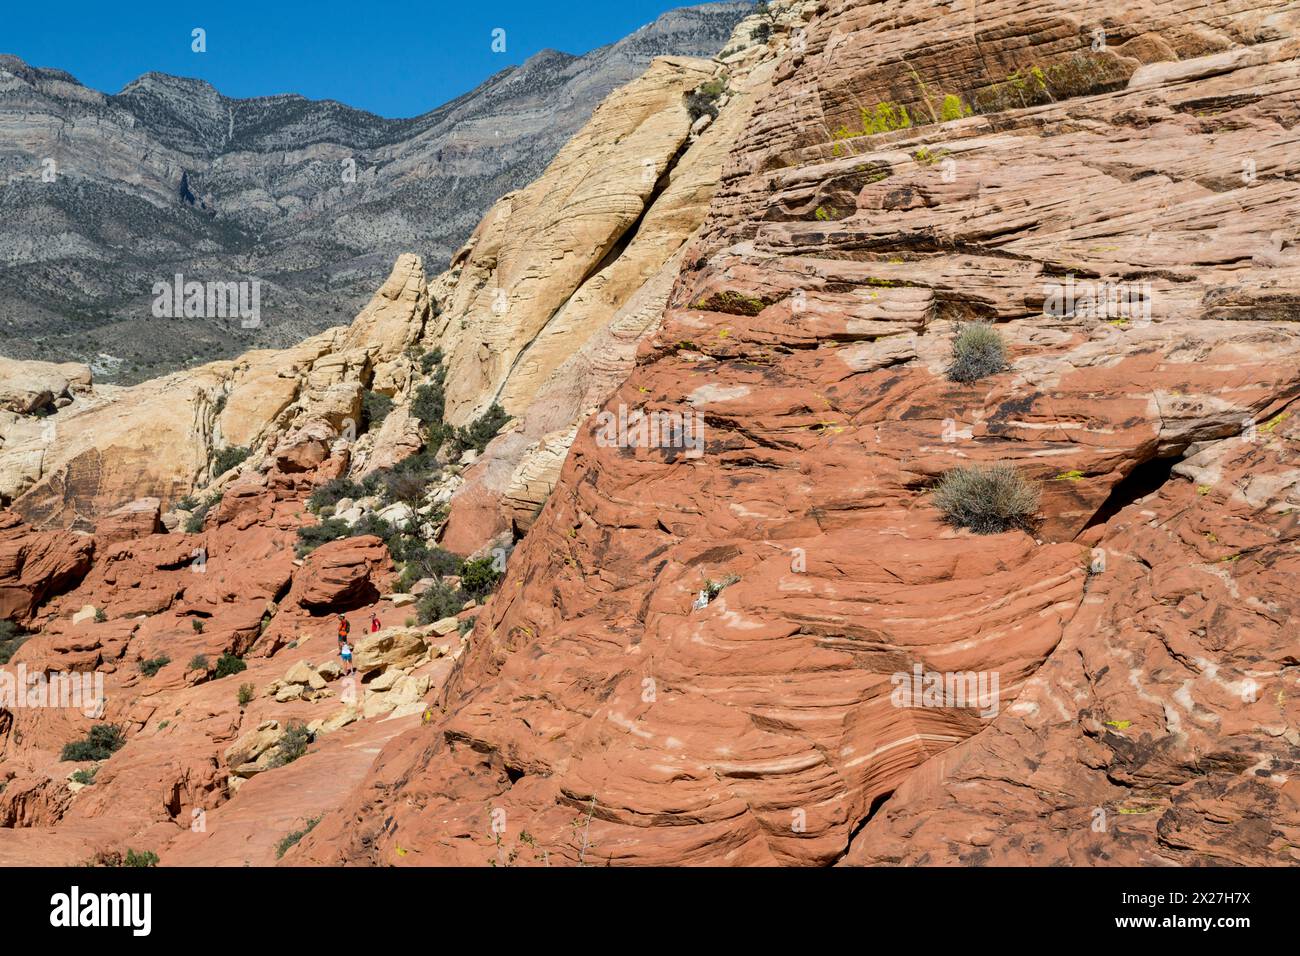 Red Rock Canyon, Nevada, Calico Tanks Trail. Roter Sandstein mit Kreuzbeet aus alten Sanddünen, Keystone-Schub im Hintergrund, Wanderung Stockfoto